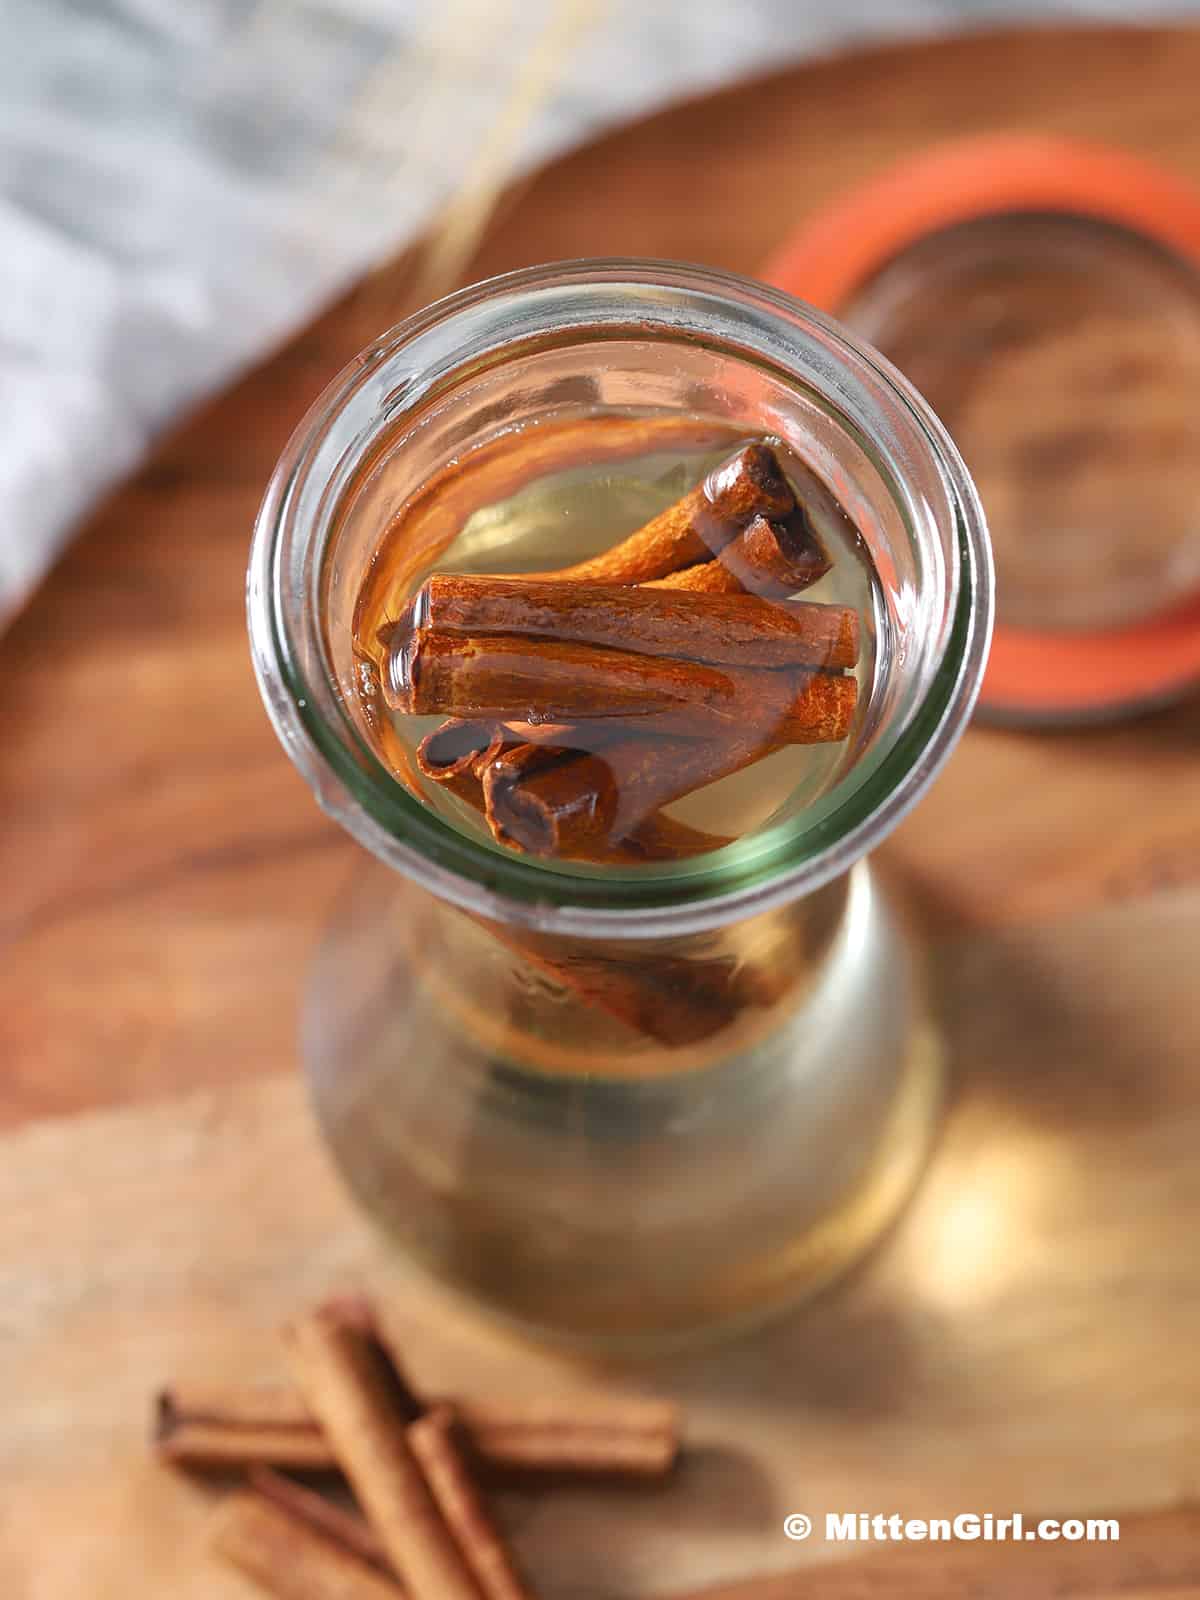 A jar full of cinnamon simple syrup.